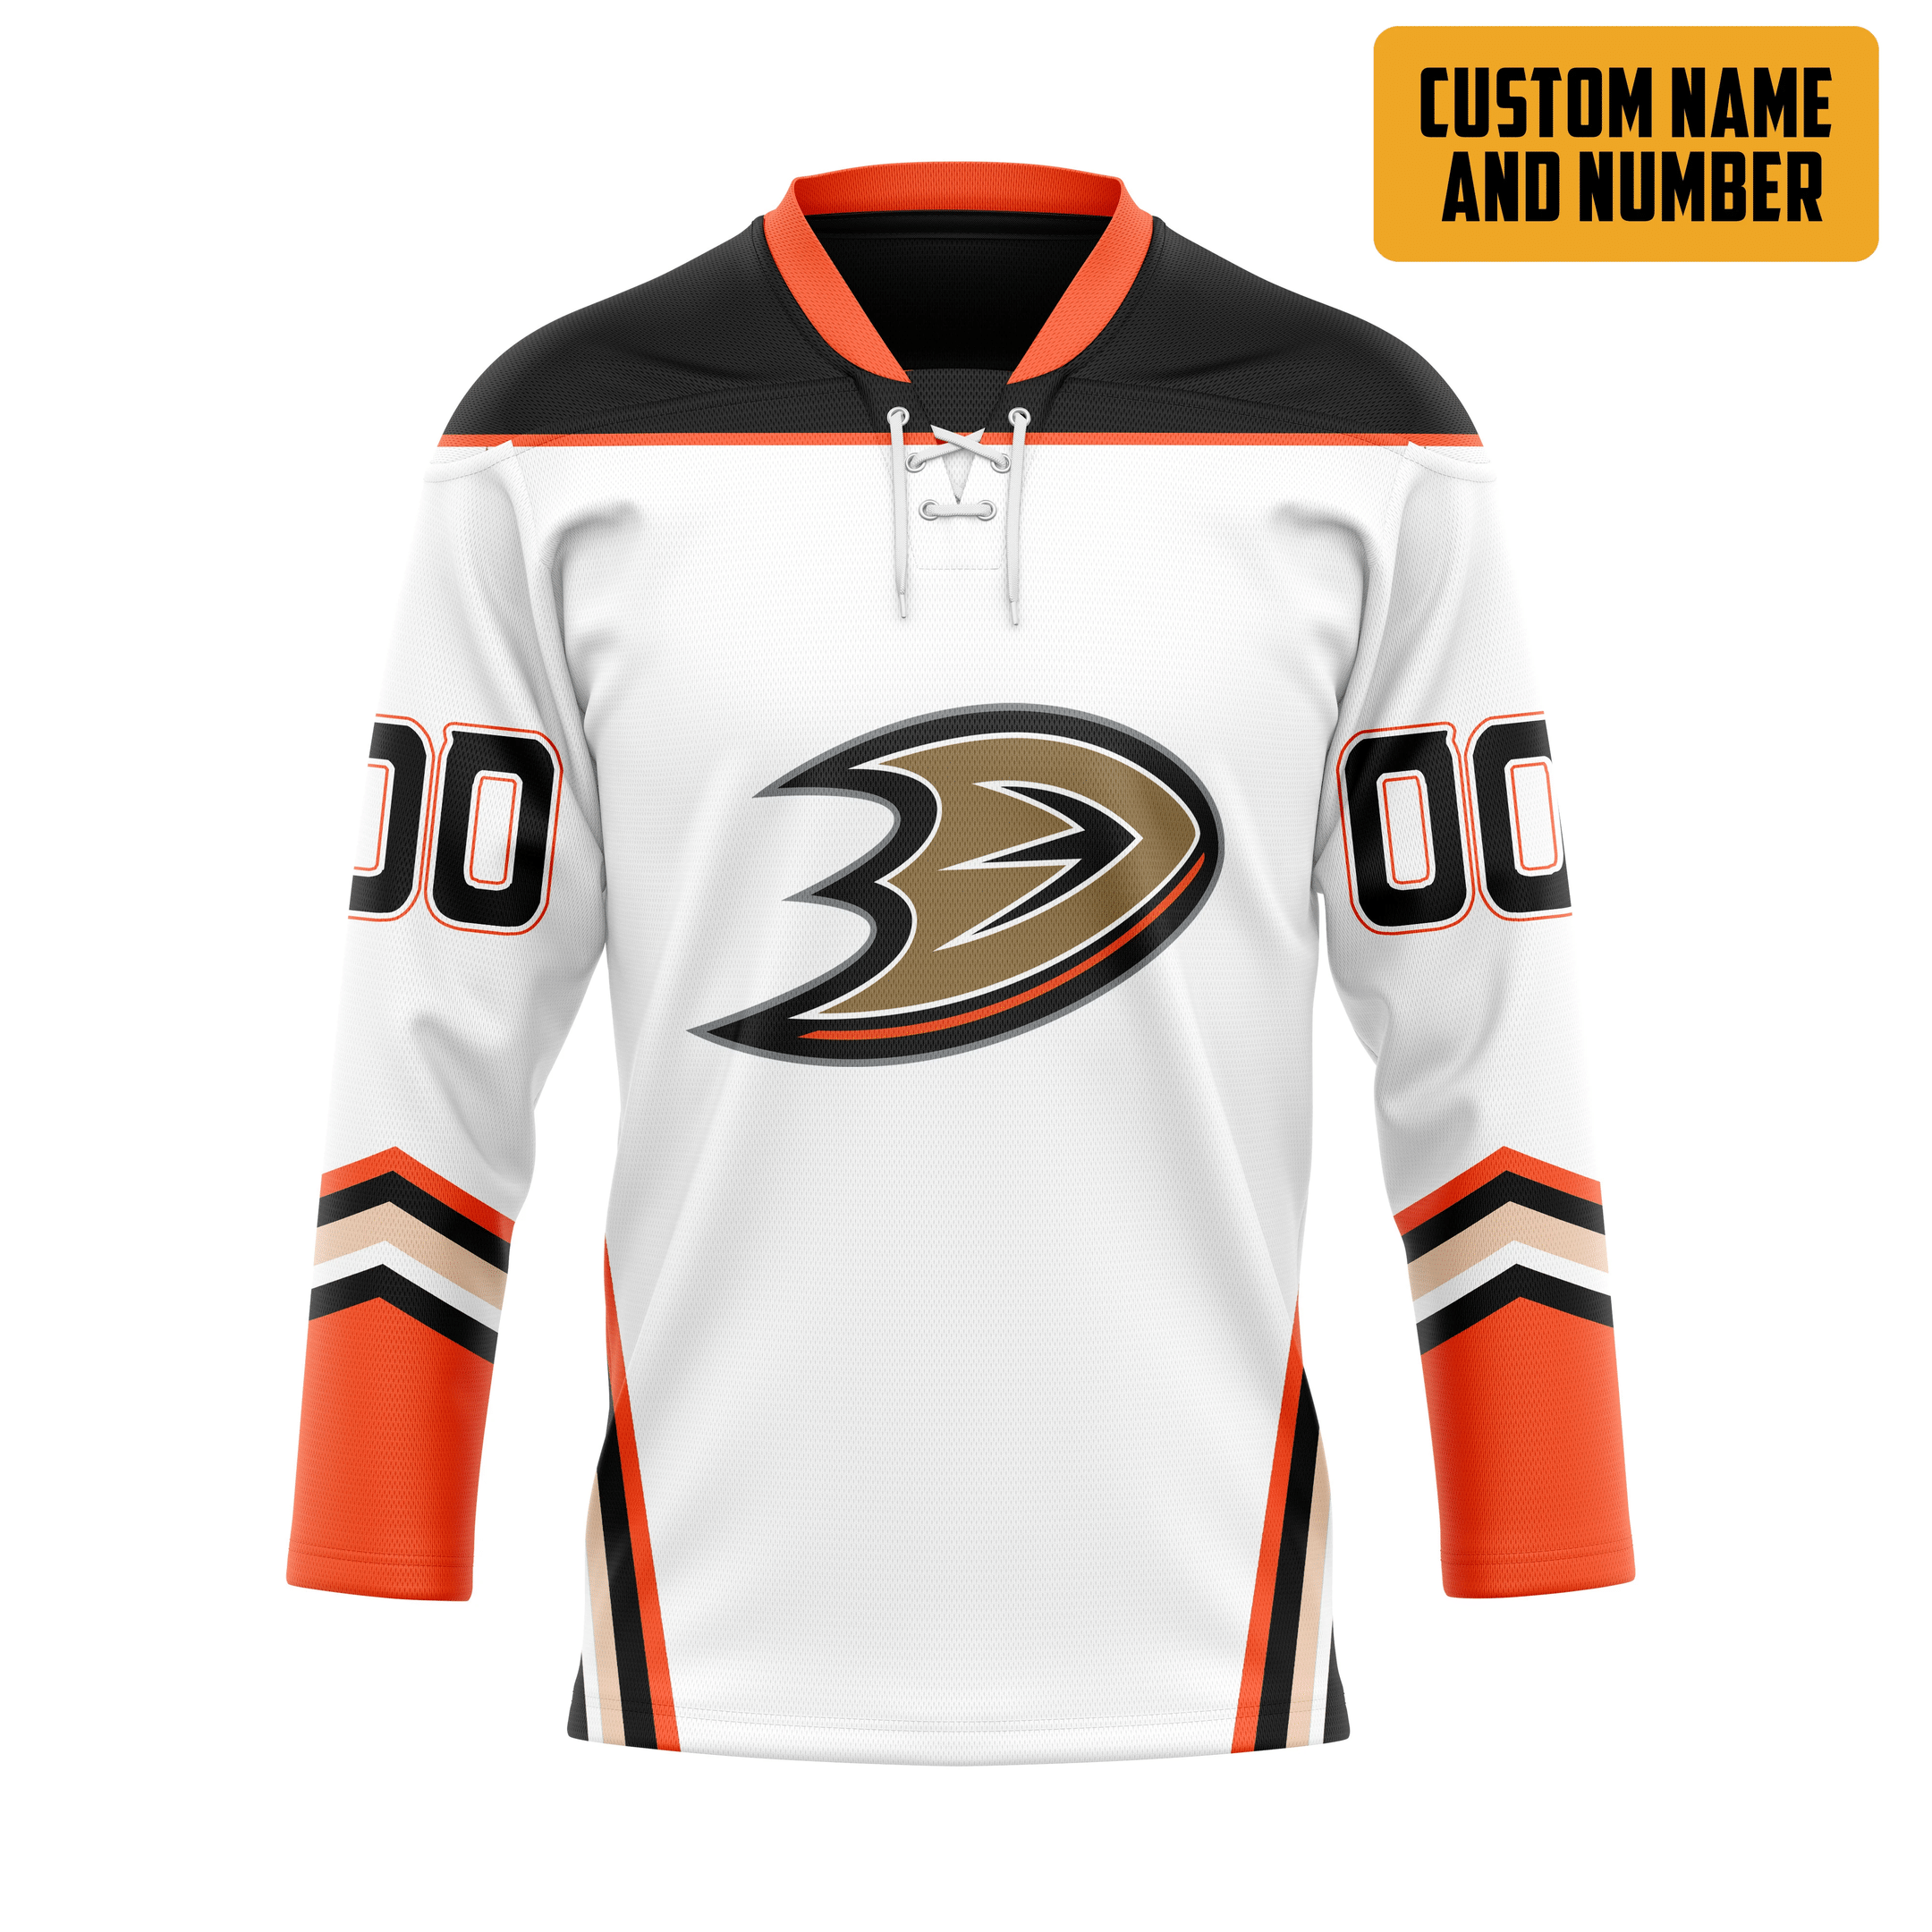 It's only $50 so don't miss out - Be sure to pick up a new hockey shirt today! 347